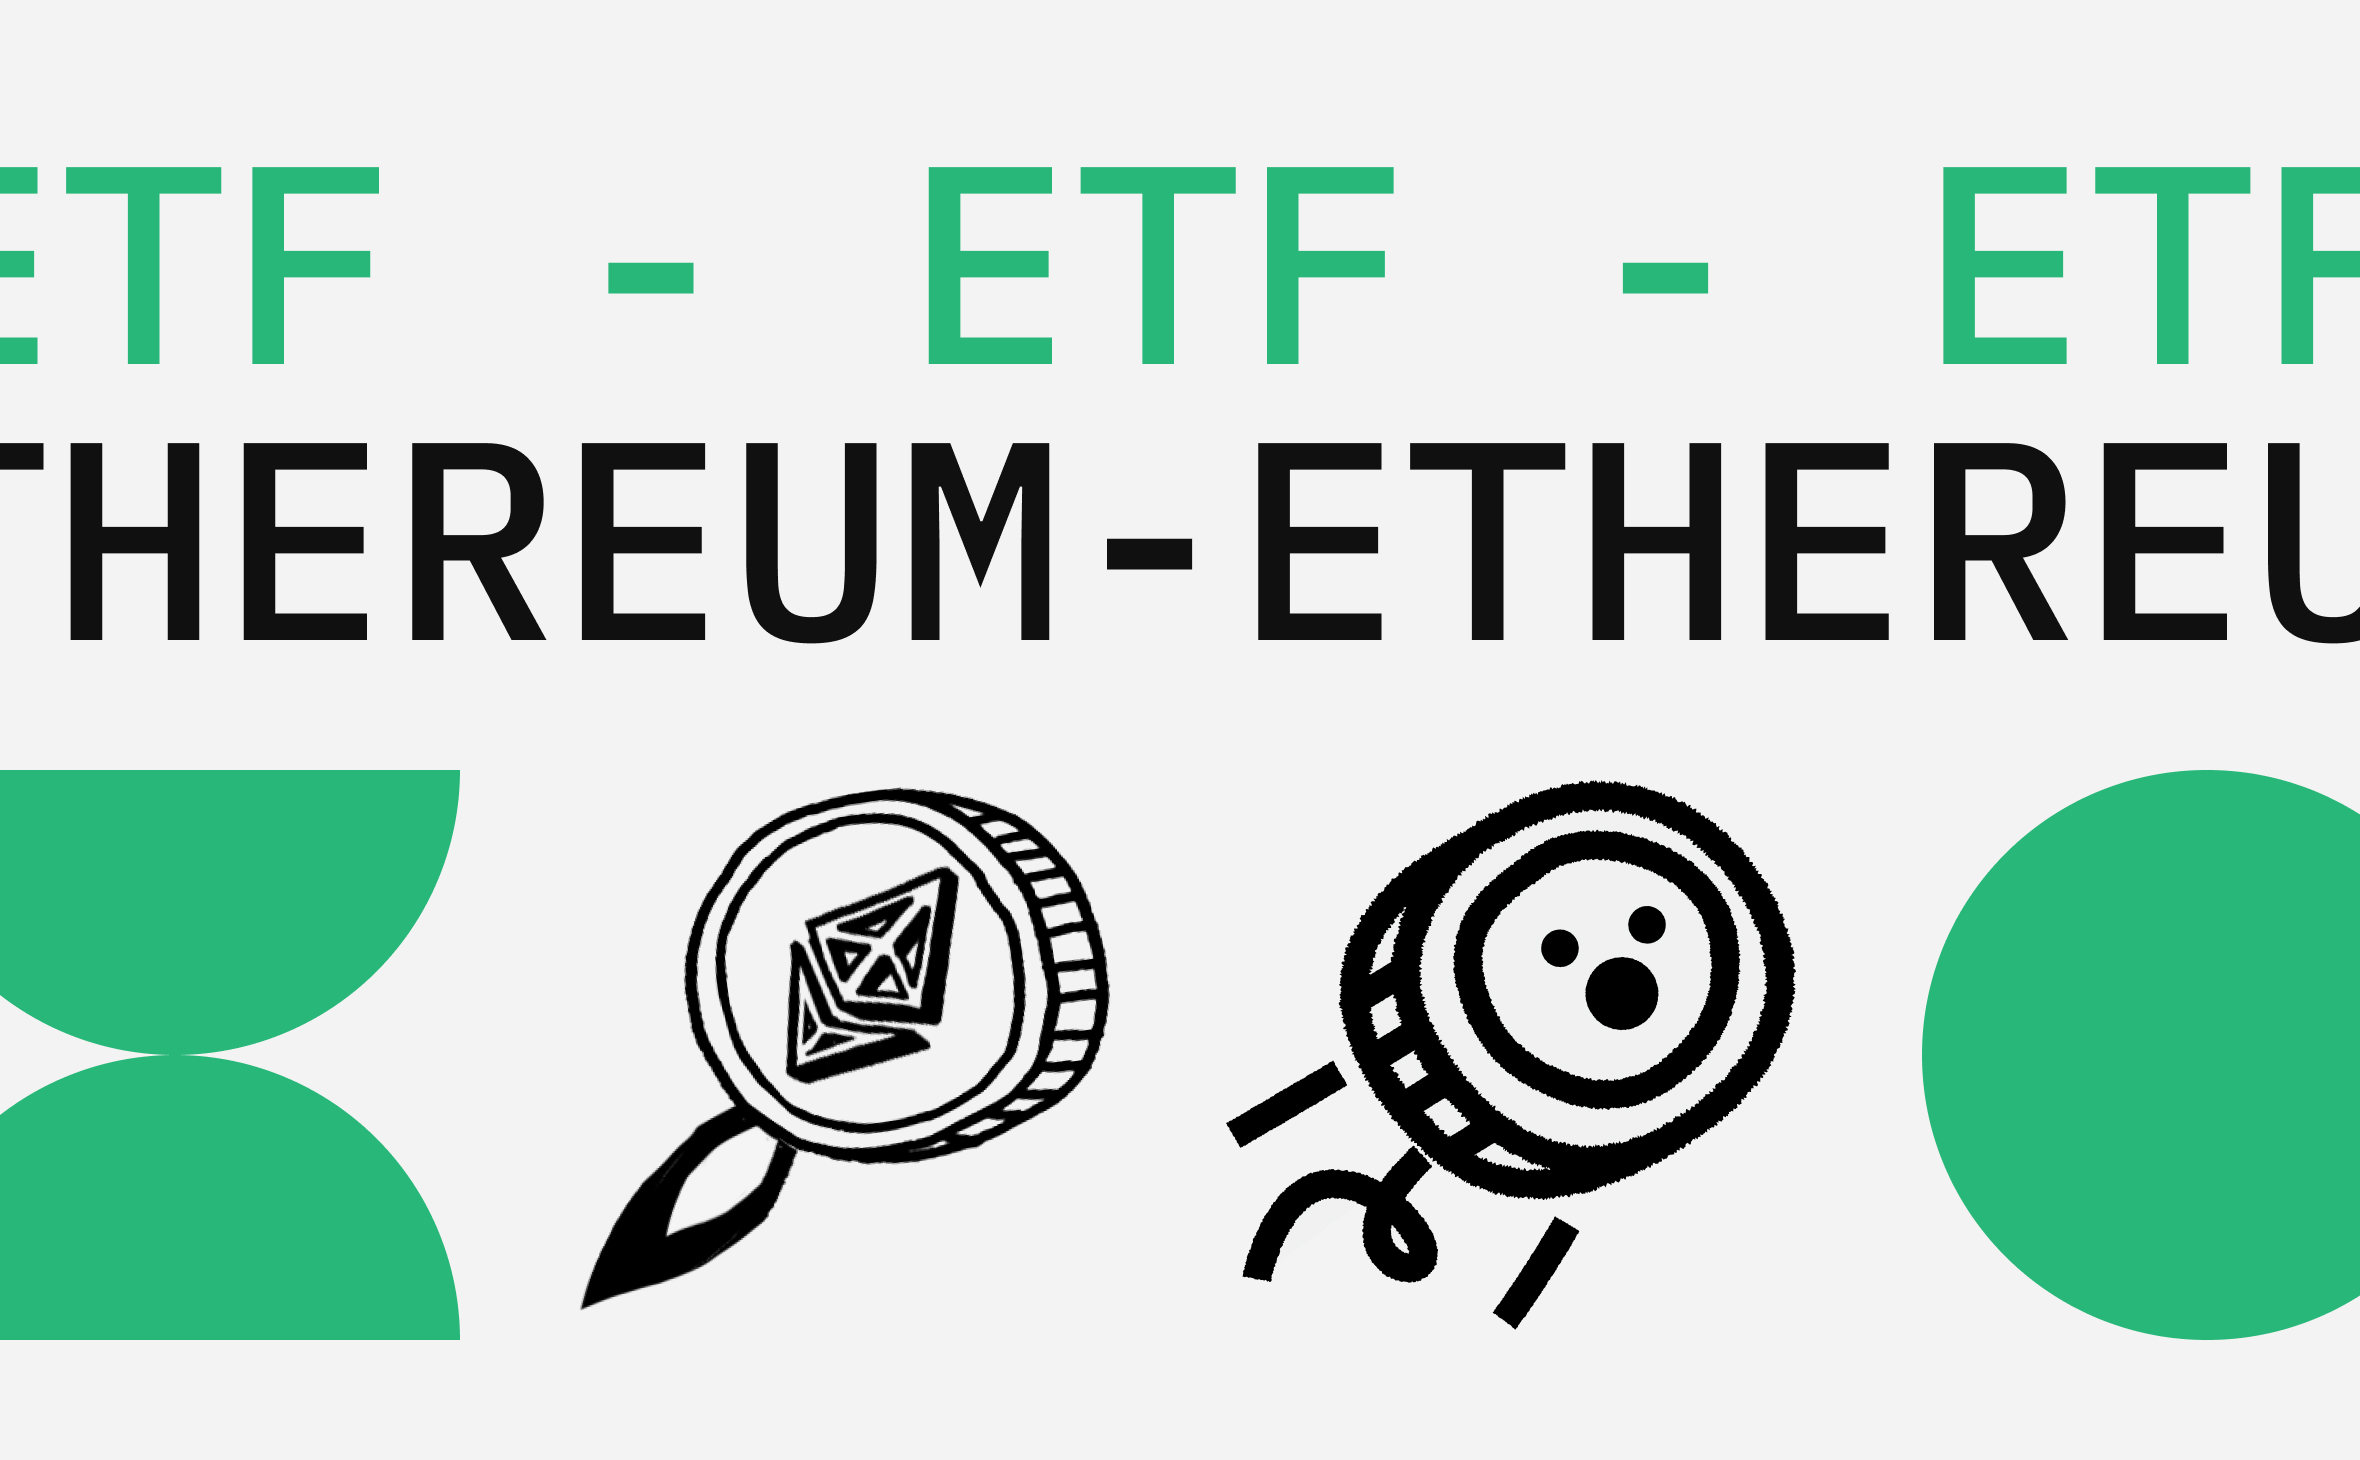 Биткоин взлетел в цене после запуска ETF. Как это будет у Ethereum